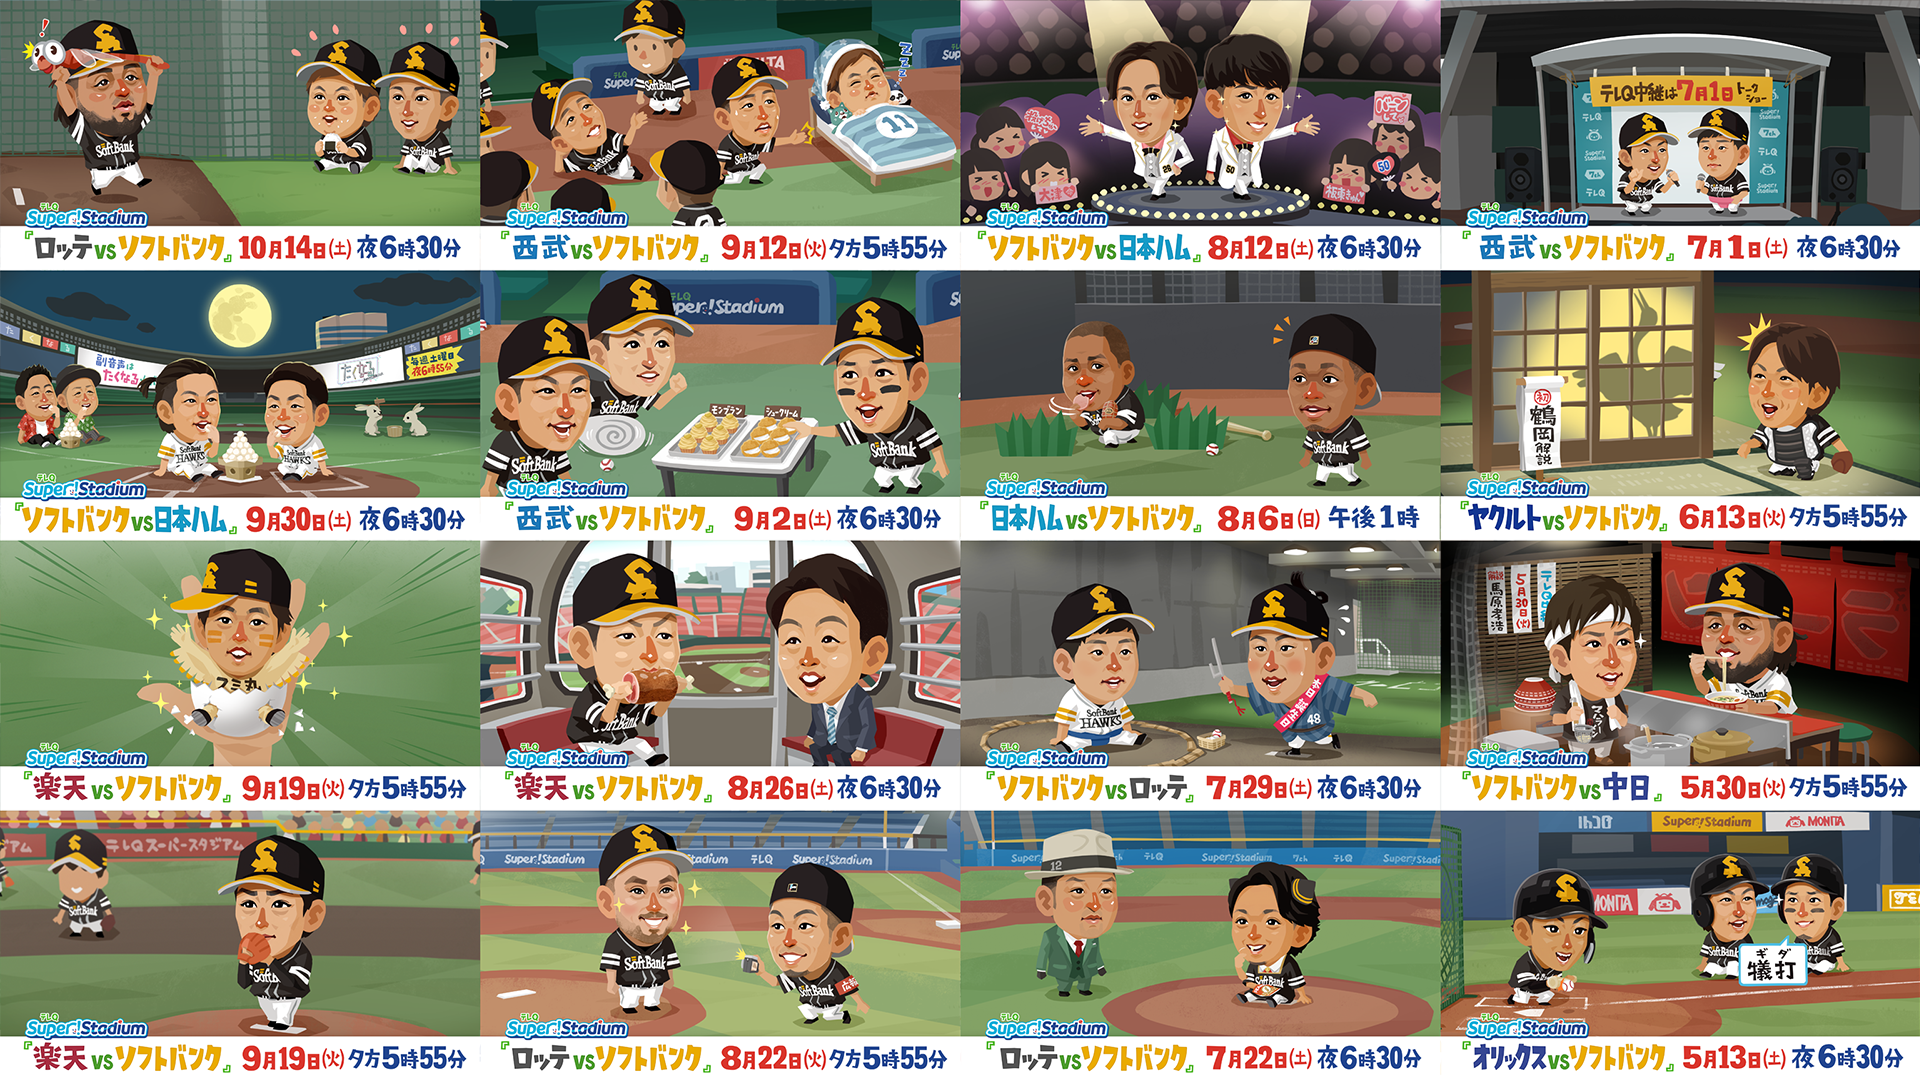 テレQ野球中継のアニメCMでおなじみあのキャラクターが今年もグッズになりました。